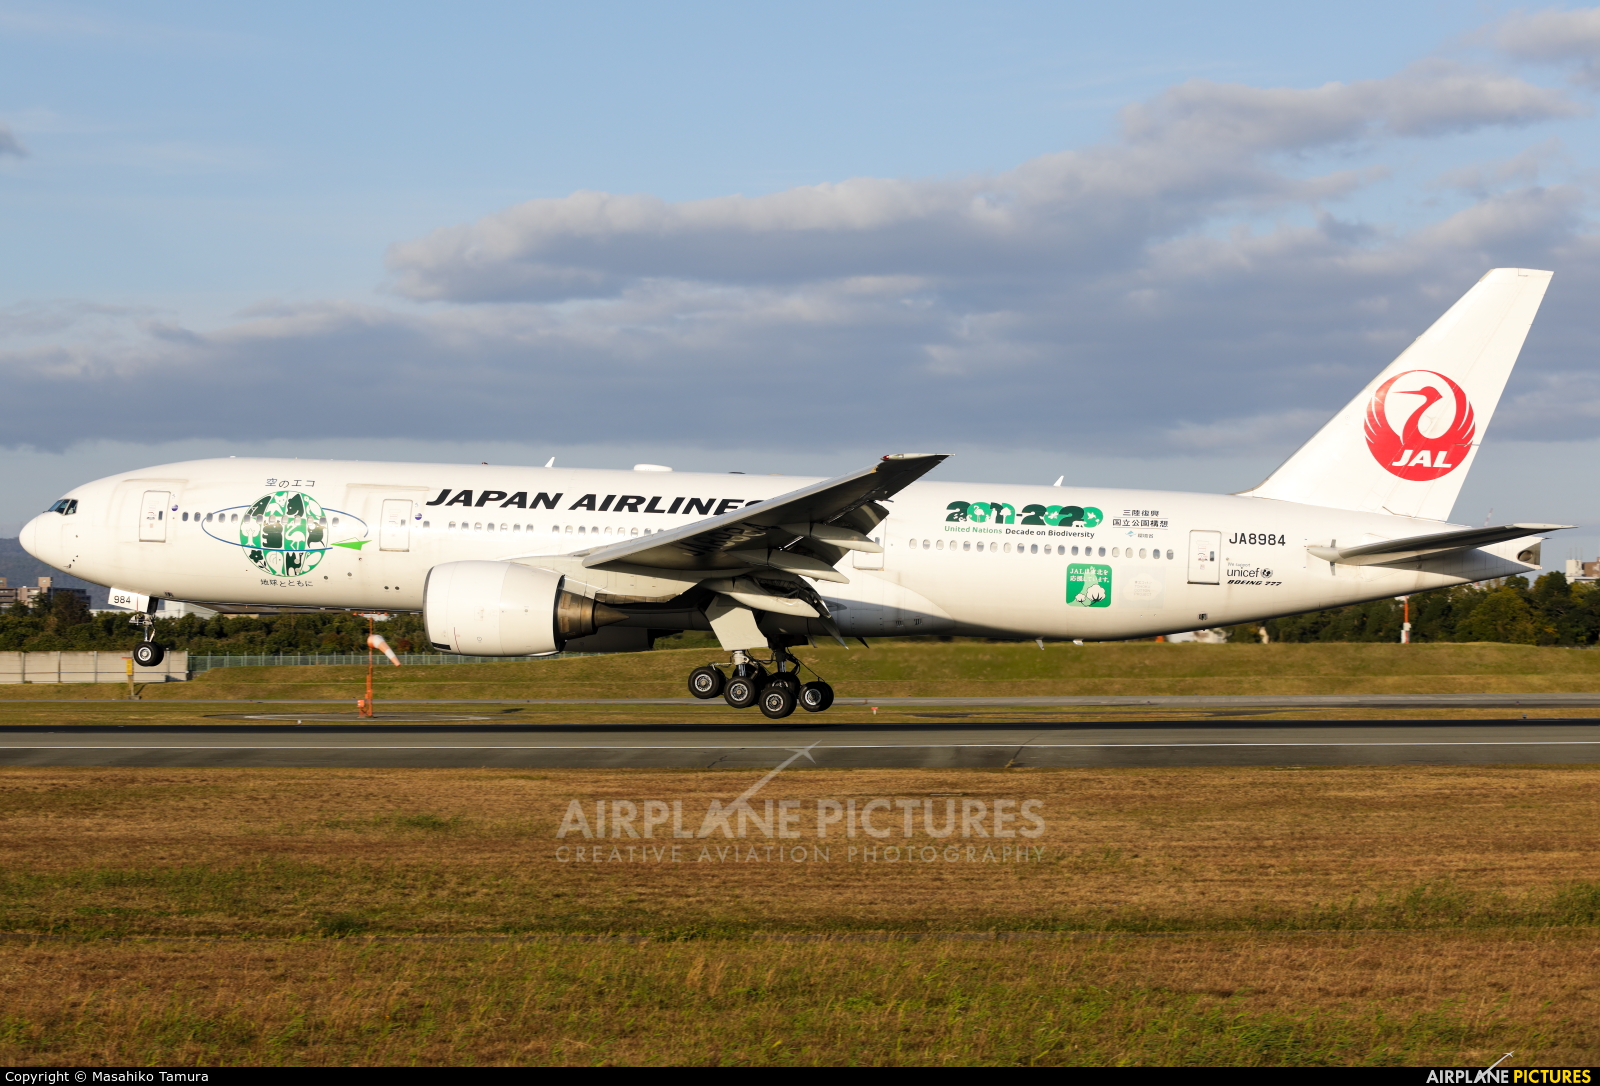 JAL - Japan Airlines JA8984 aircraft at Osaka - Itami Intl